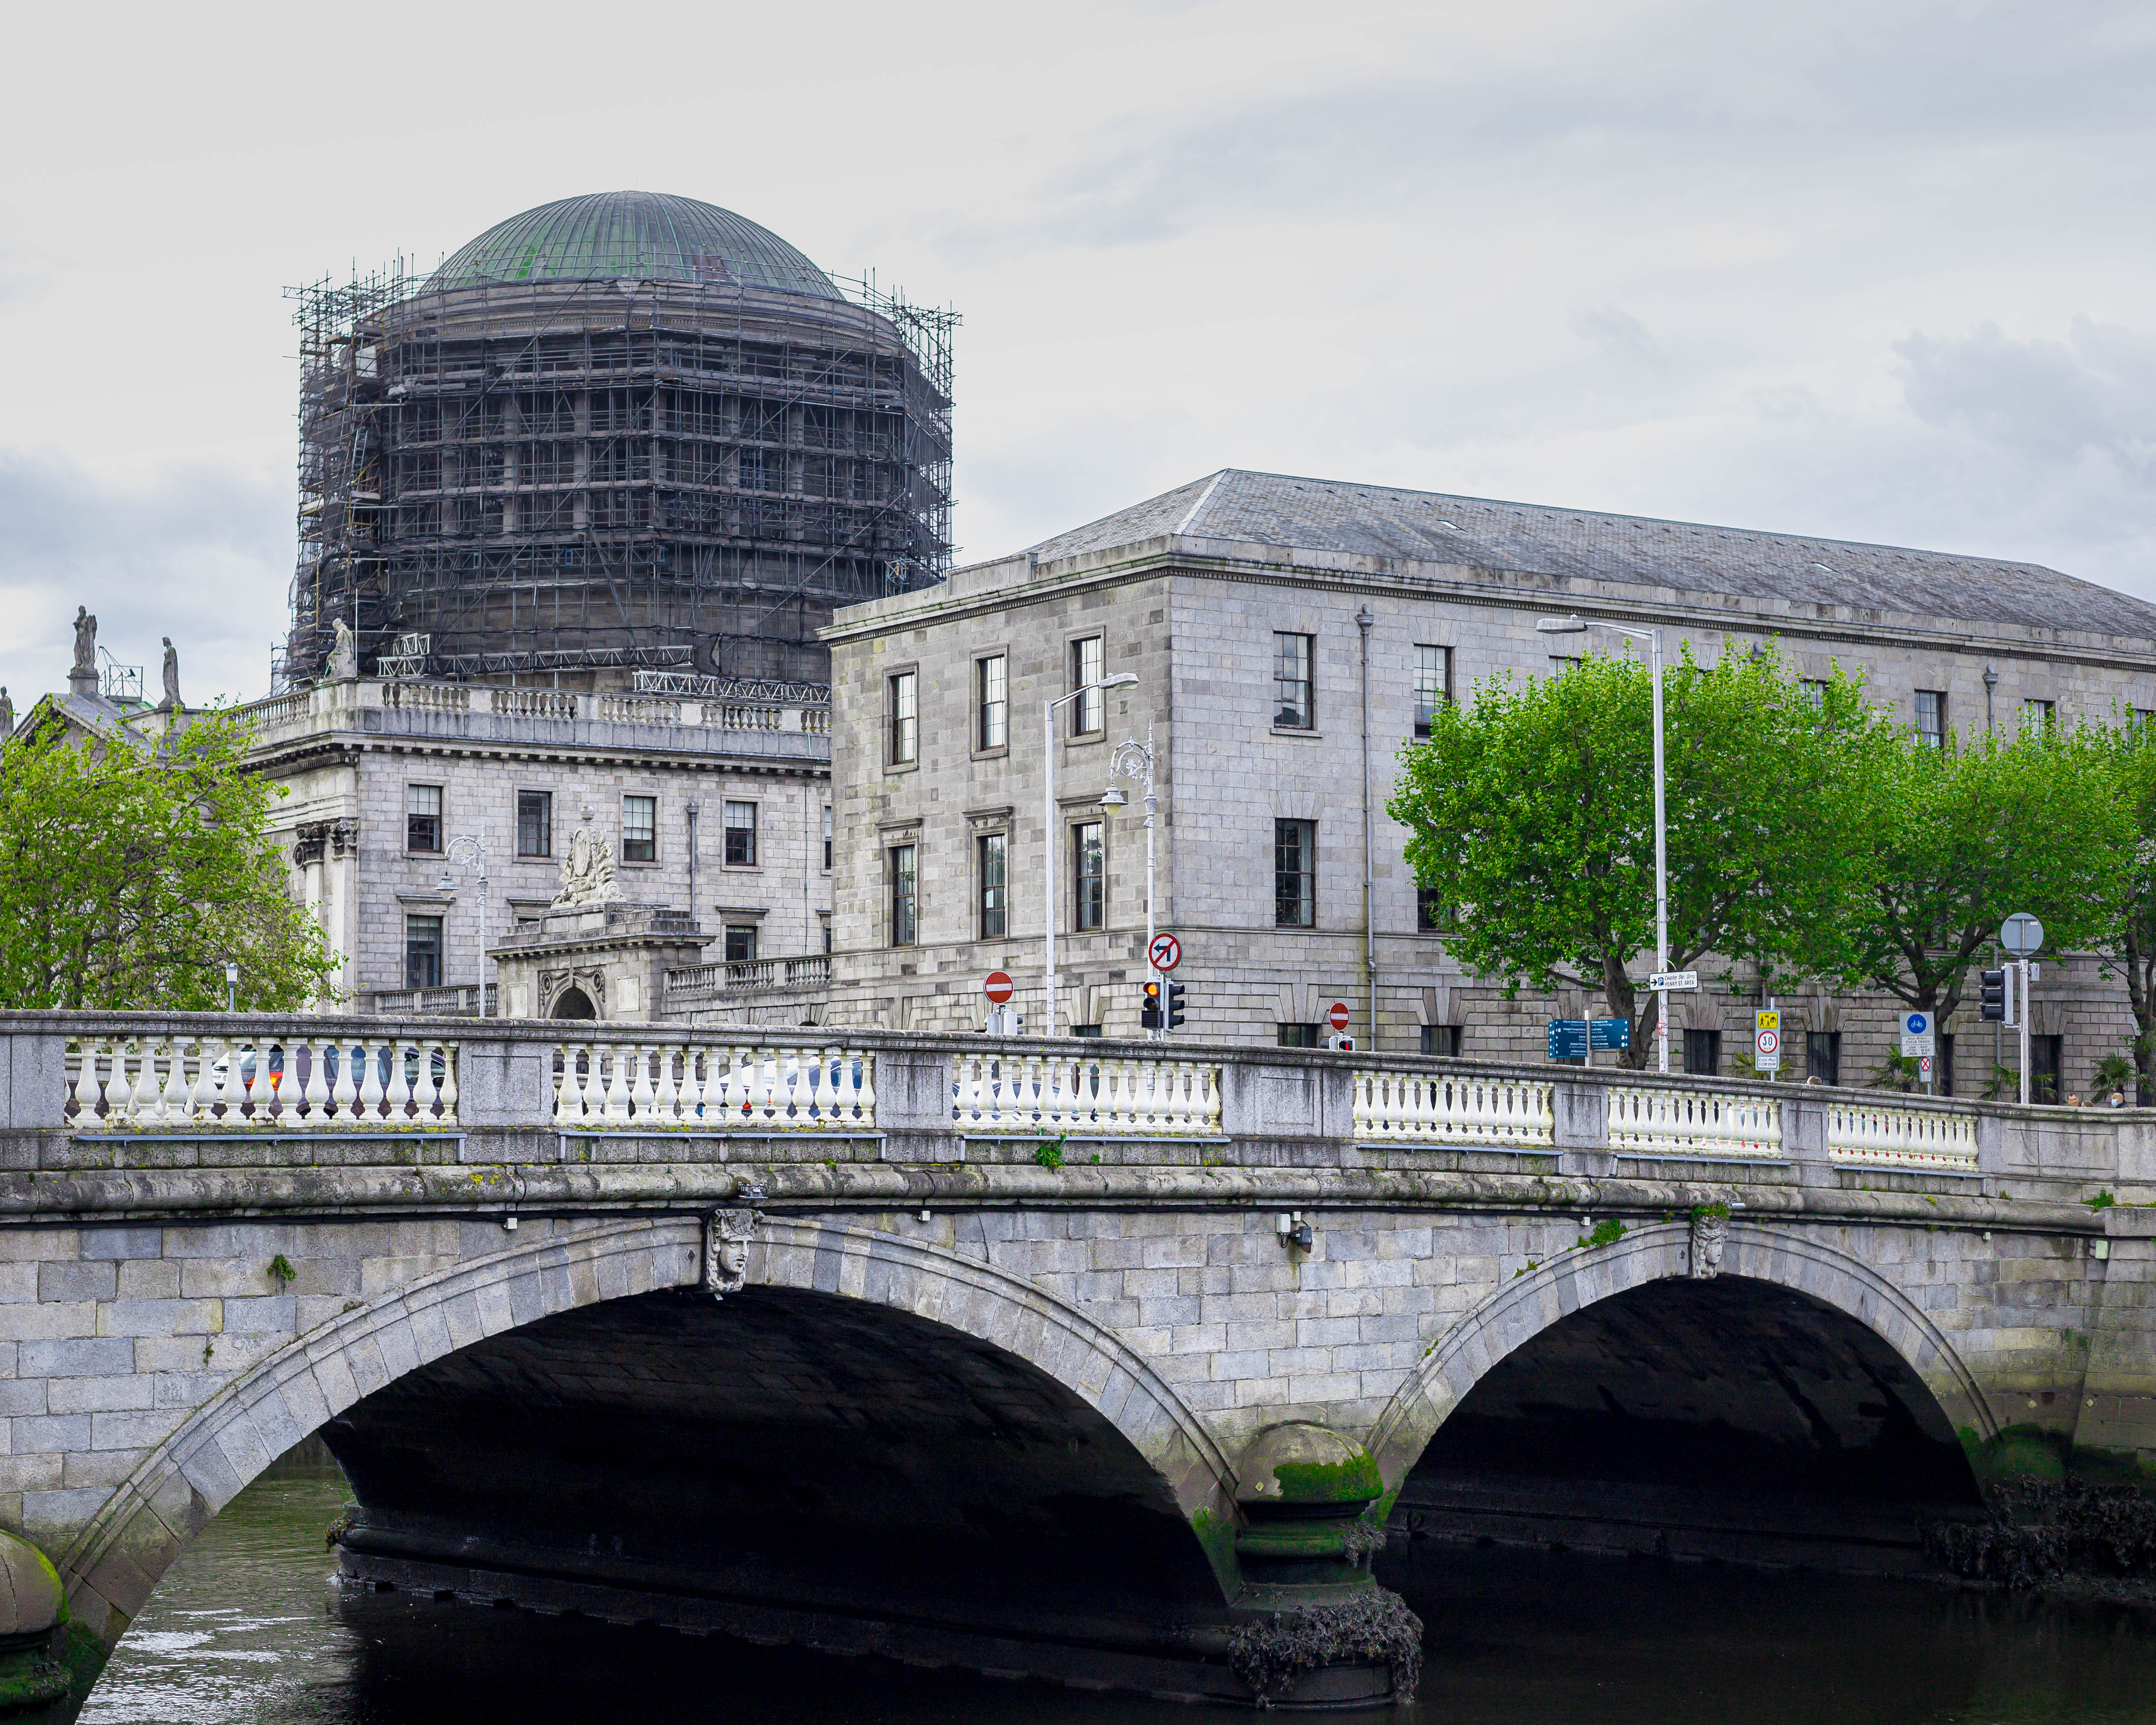 Dublin City Centre – architecture shots